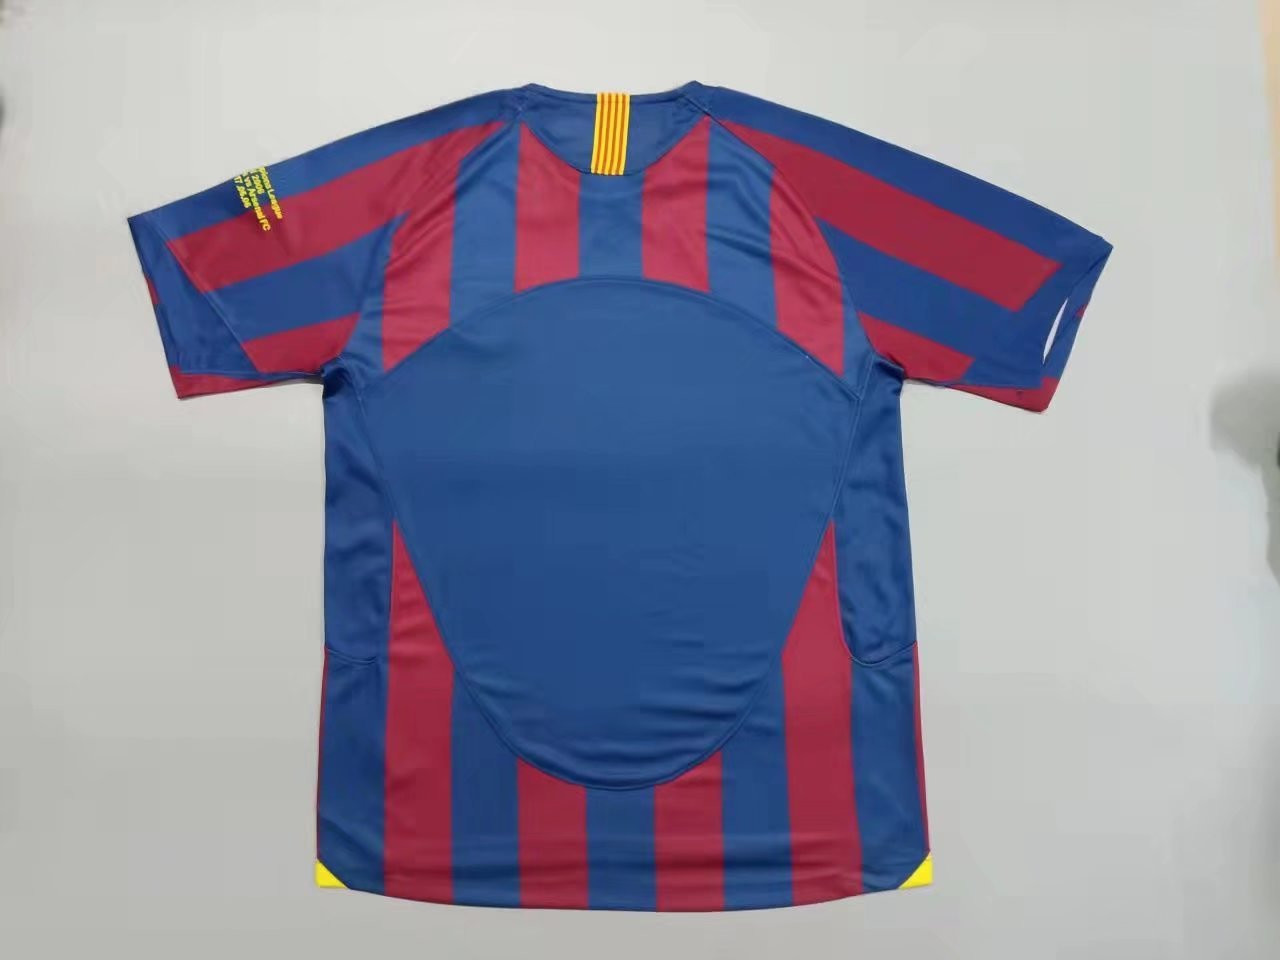 Barcelona Soccer Jersey Replica Retro Home Champions League Mens 2005-2006